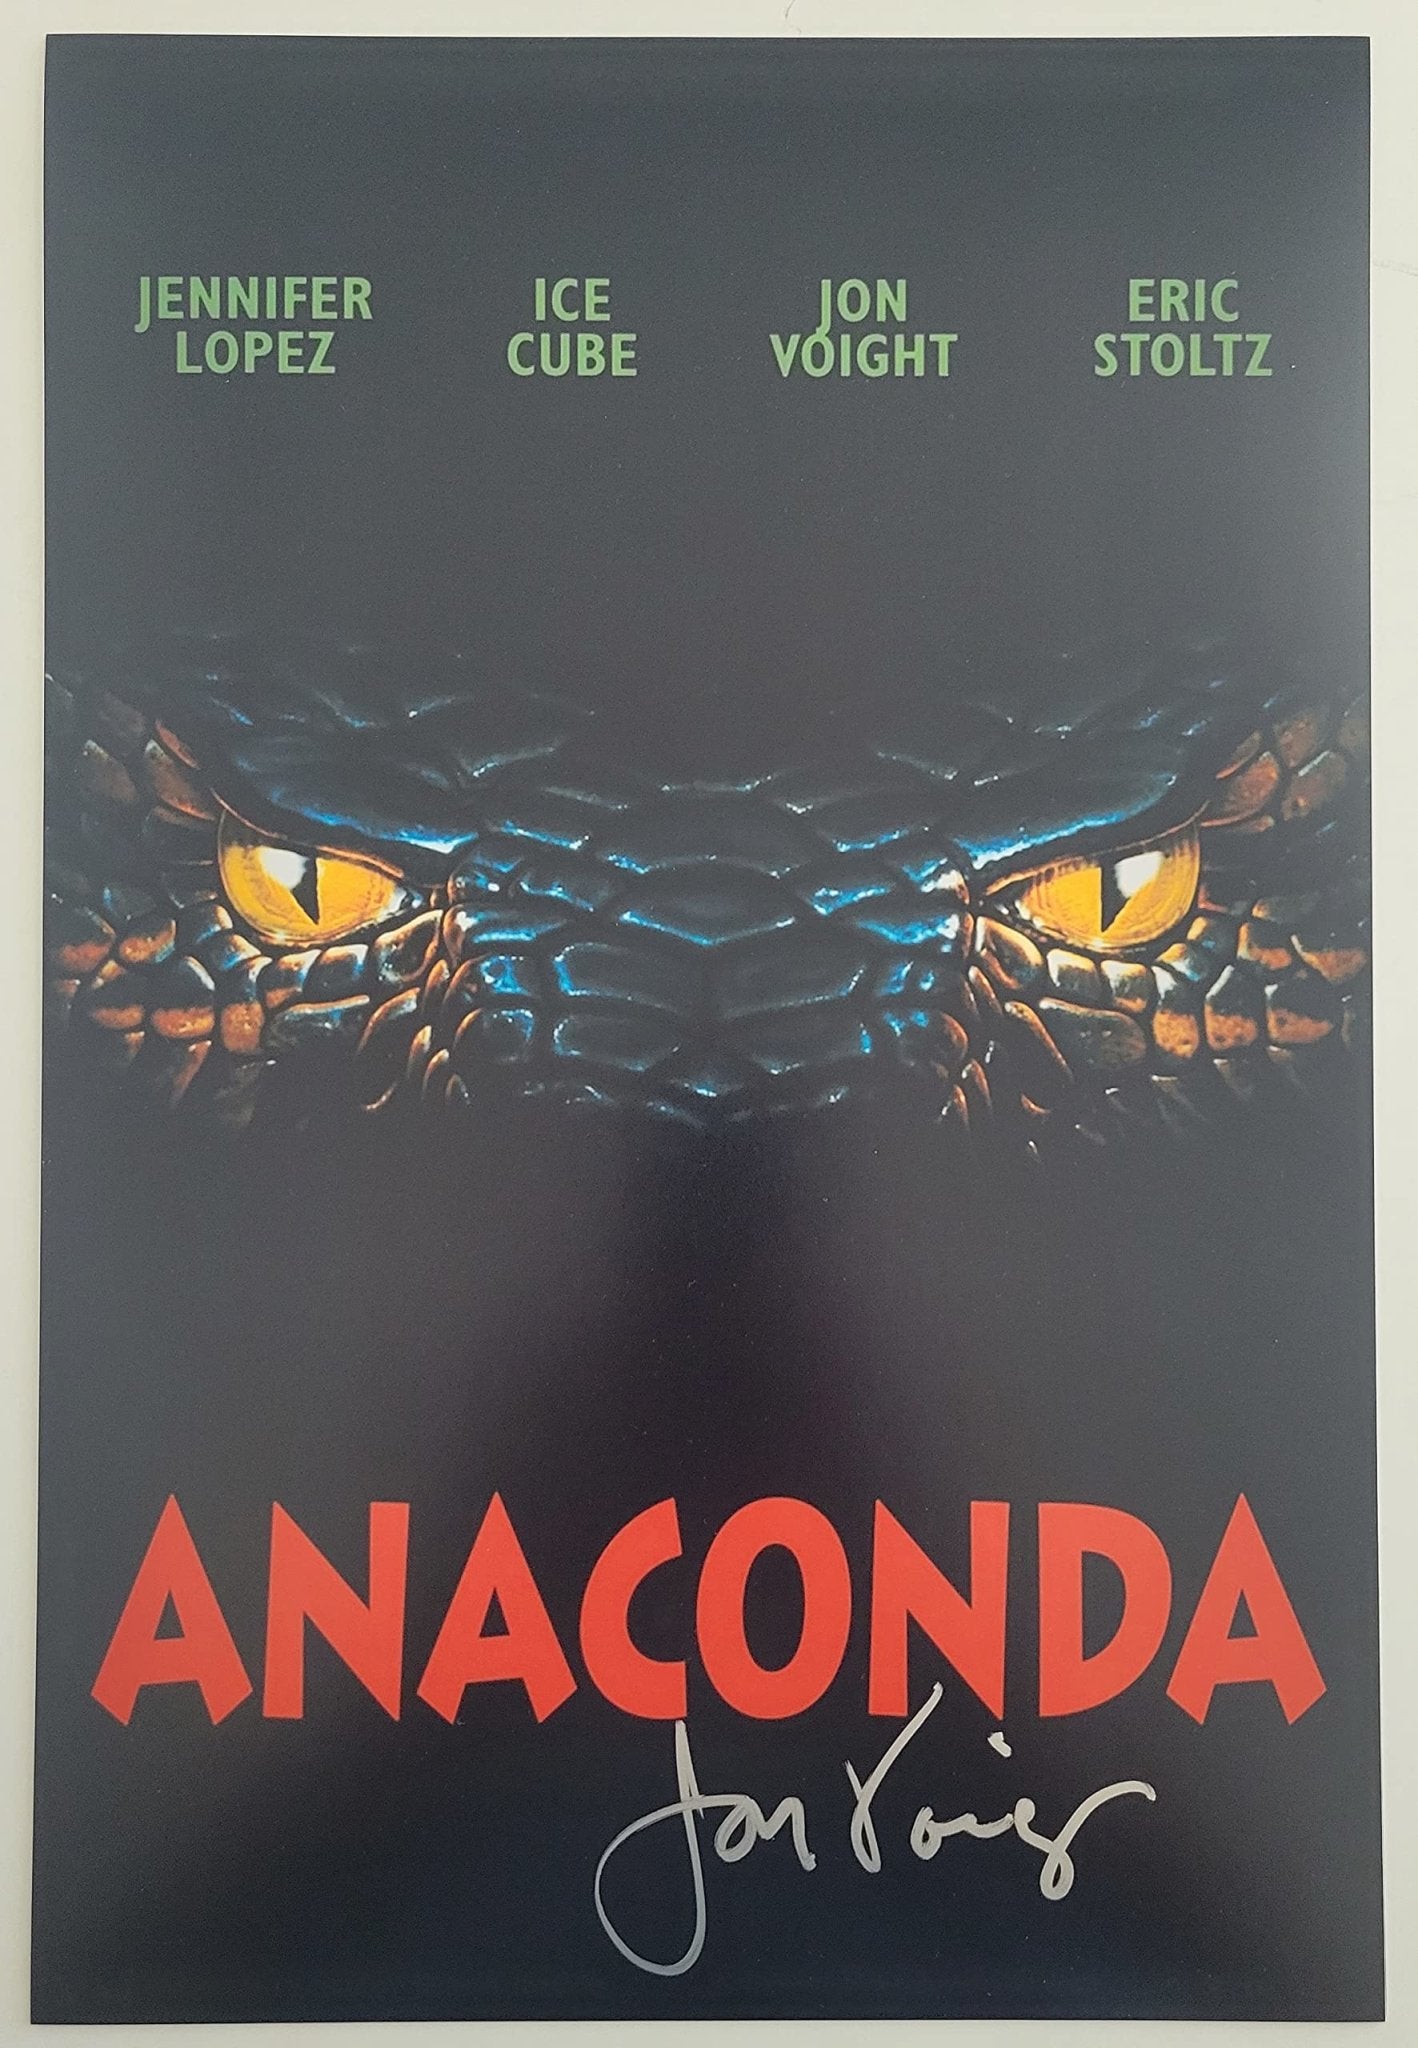 anaconda movie poster